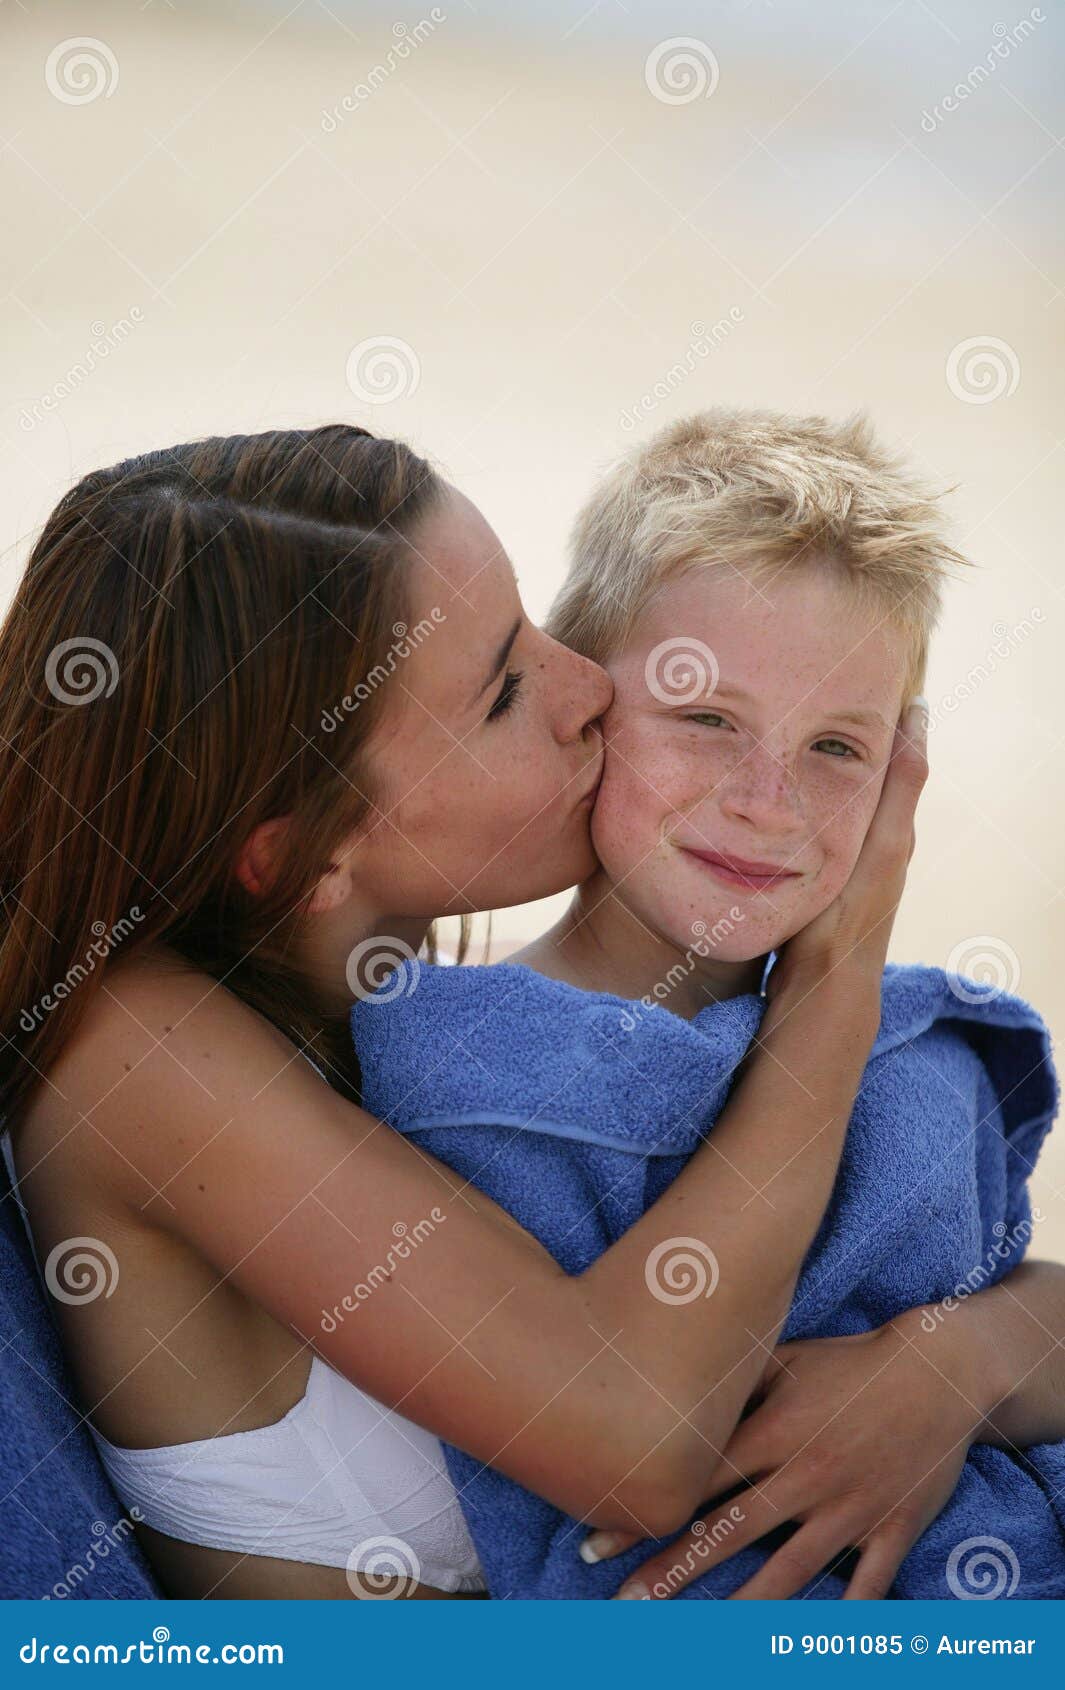 woman kissing boy